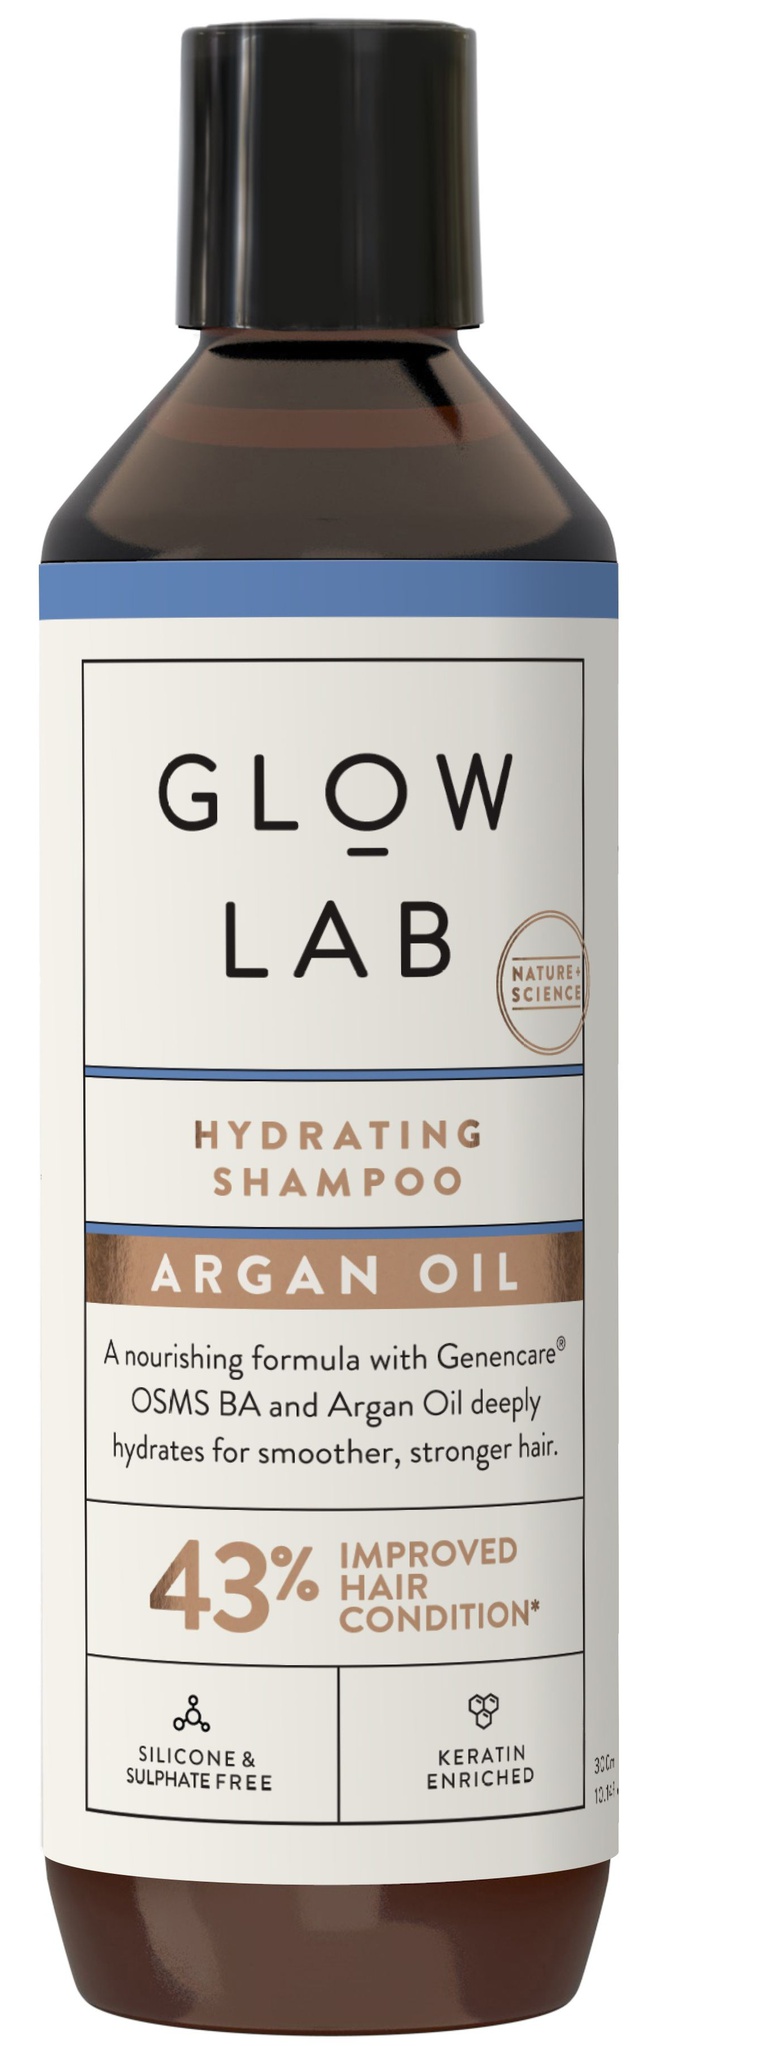 Glow Lab Argan Oil Hydrating Shampoo